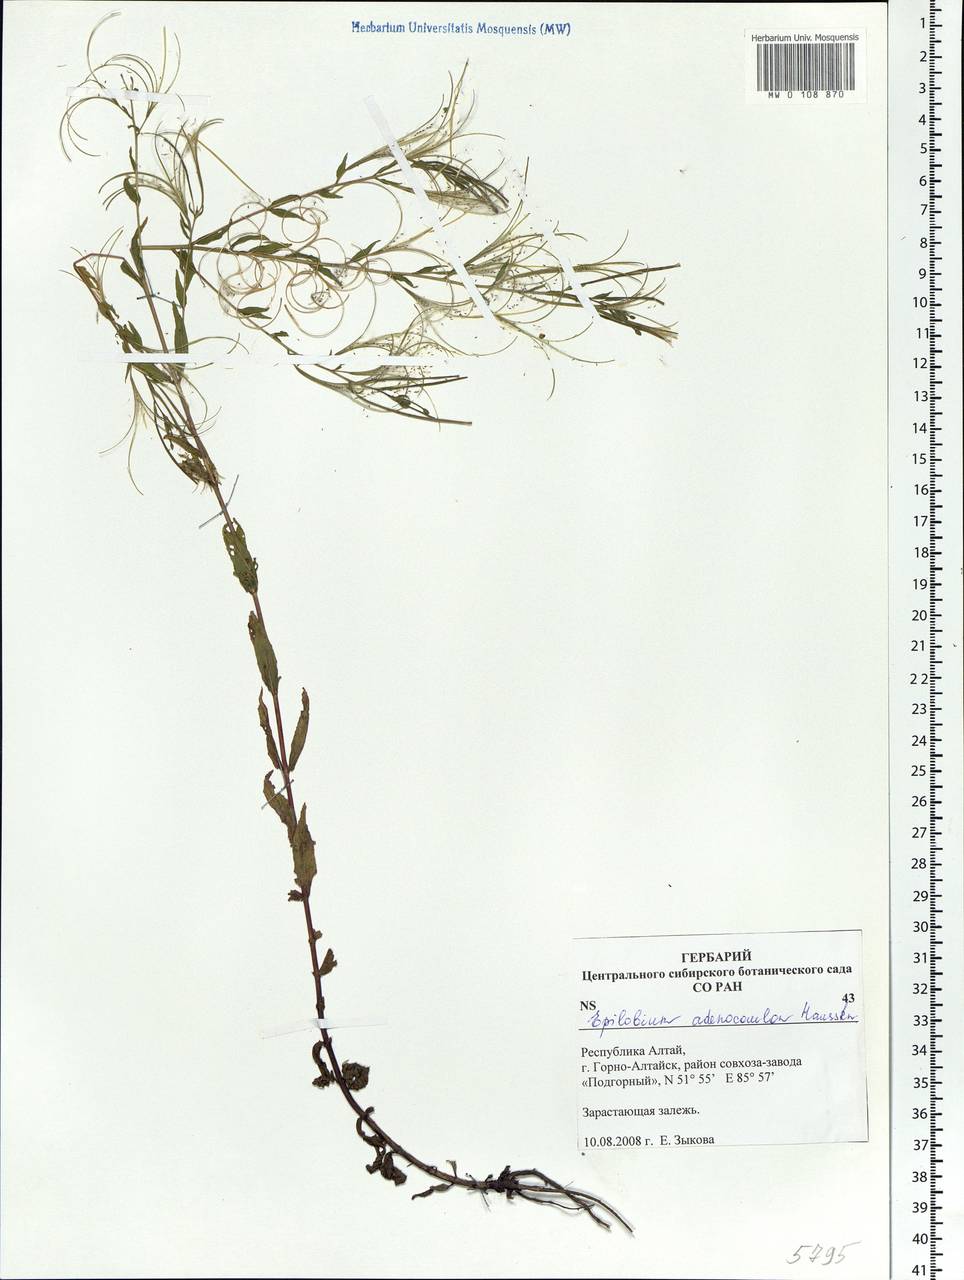 Epilobium ciliatum subsp. ciliatum, Siberia, Altai & Sayany Mountains (S2) (Russia)